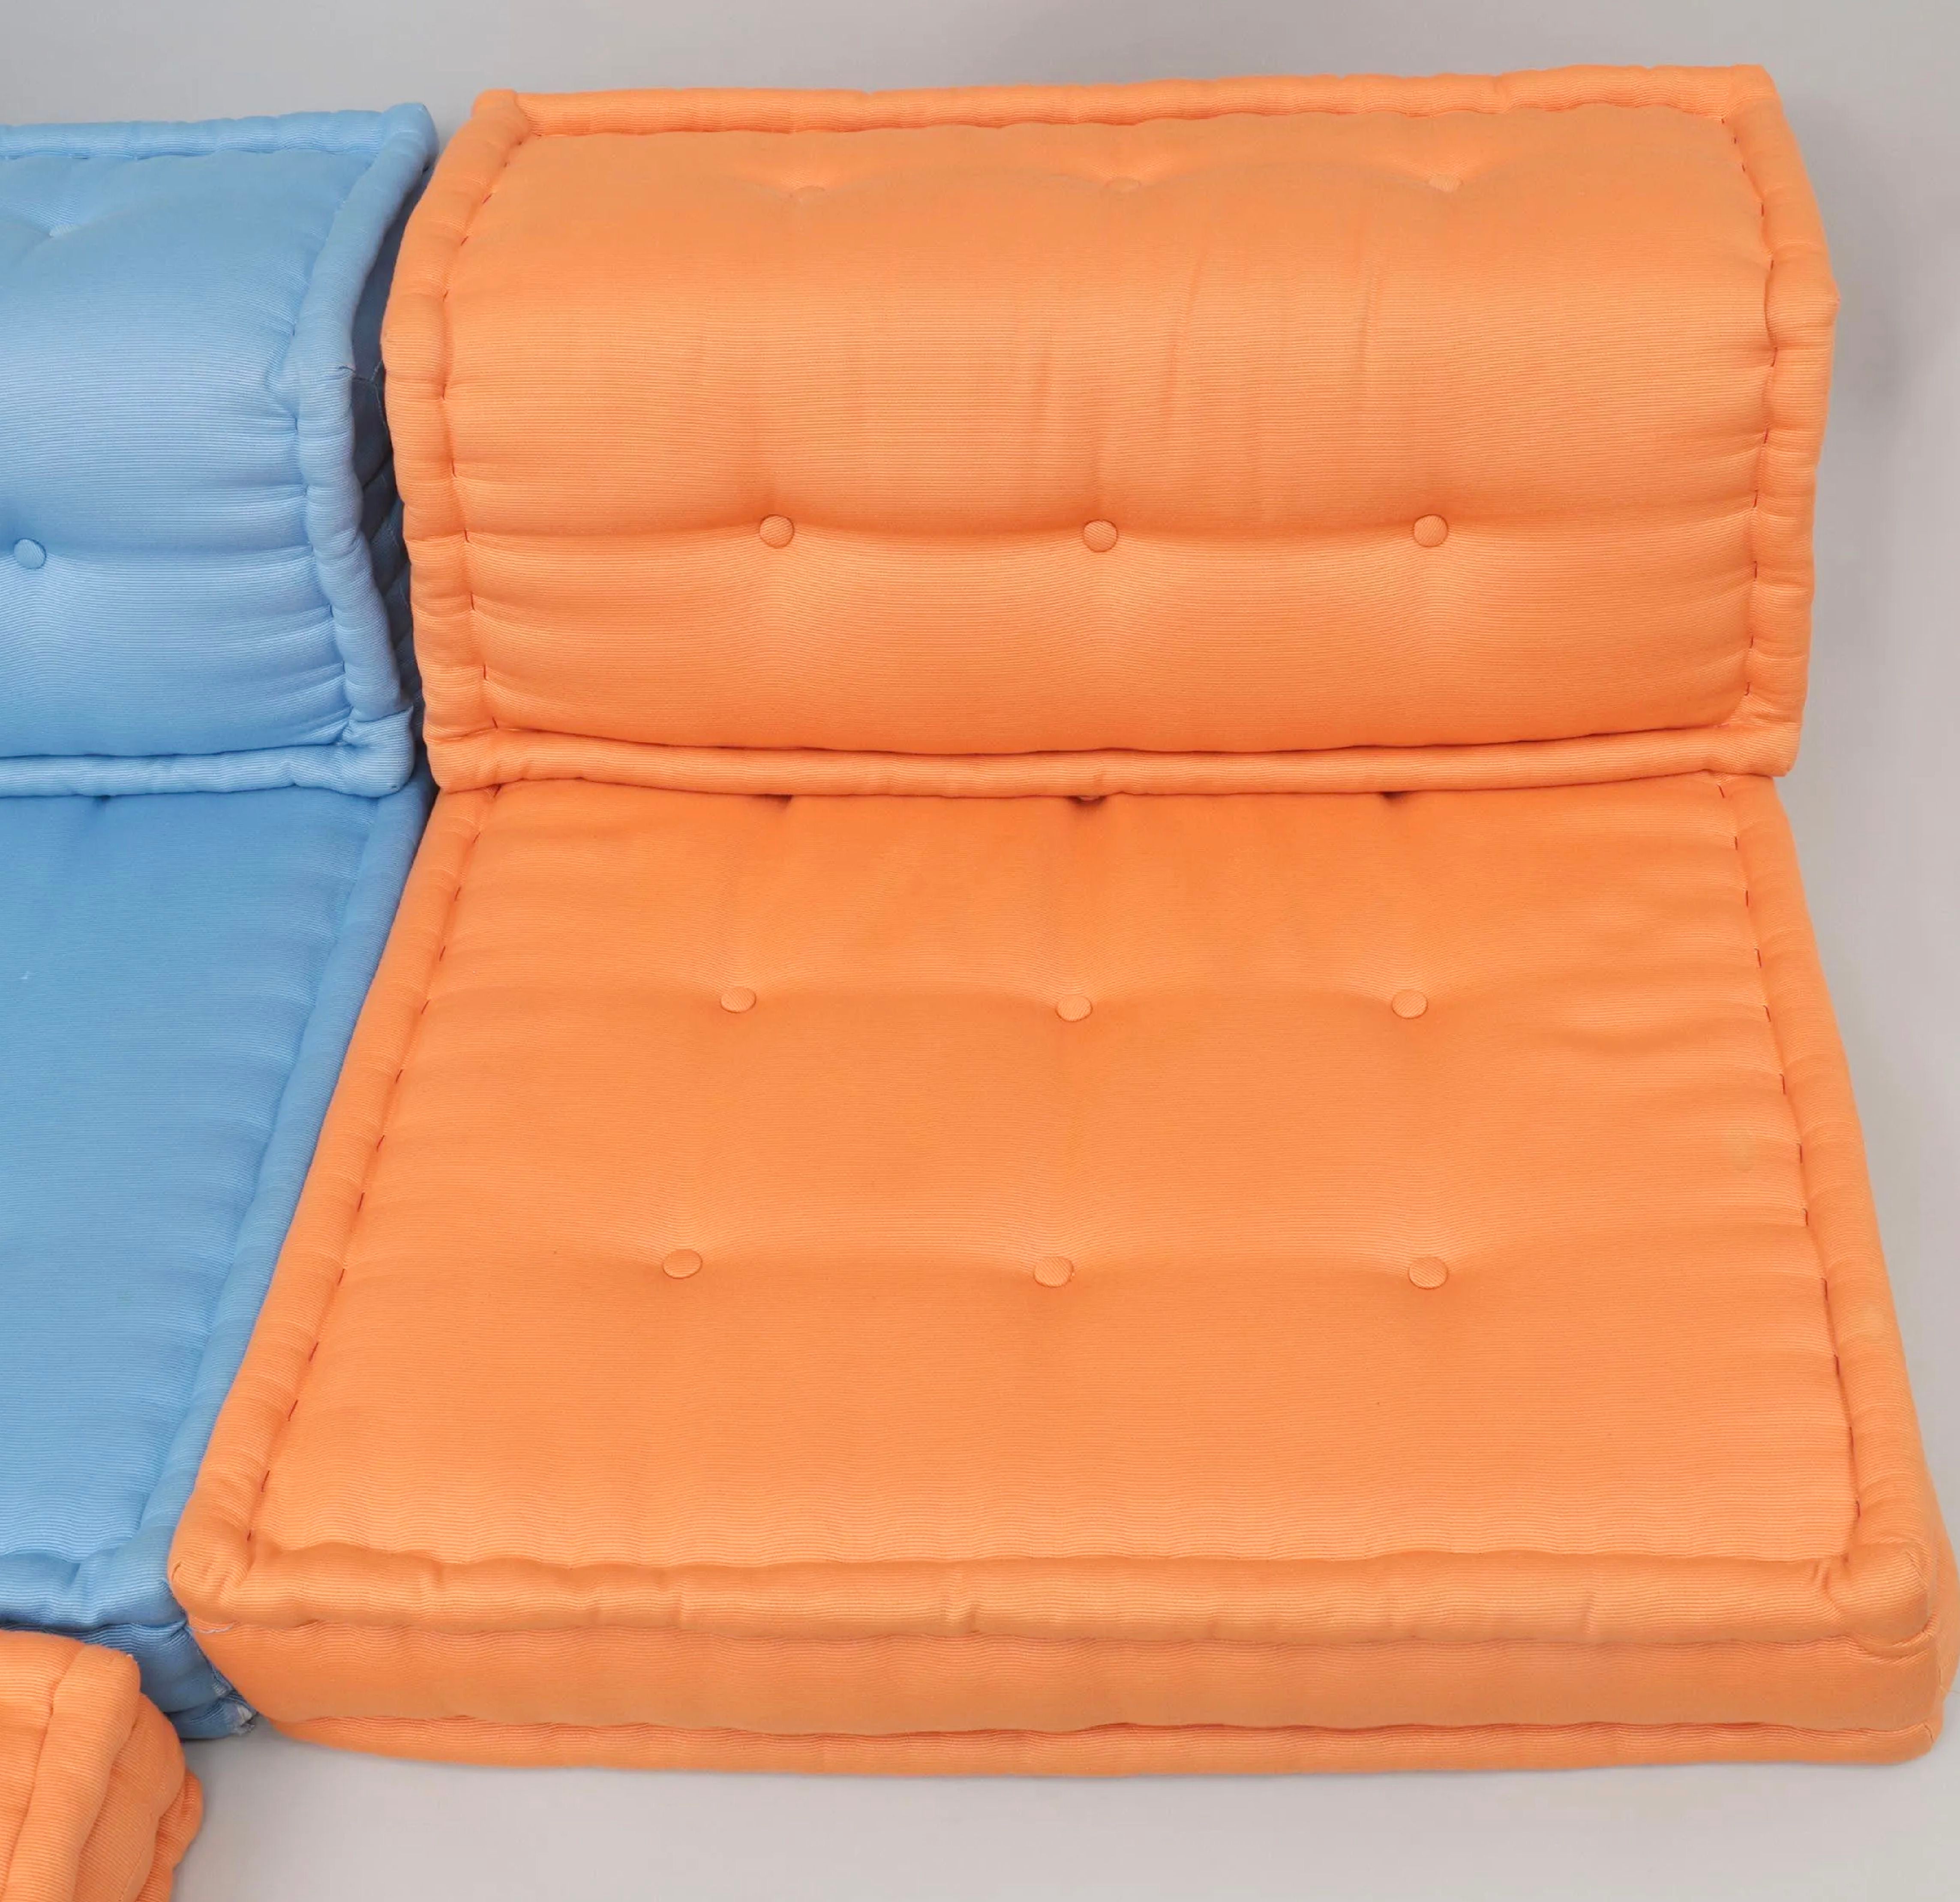 Roche Bobois Mah Jong orange Lounge Chair Set, Hans Hopfer, Italien. Dieses Angebot bezieht sich auf einen Satz von Elementen, der ein quadratisches Kissen und eine gerade Rückenlehne umfasst, beide aus orangefarbenem Stoff.
Von Roche Bobois: Hans